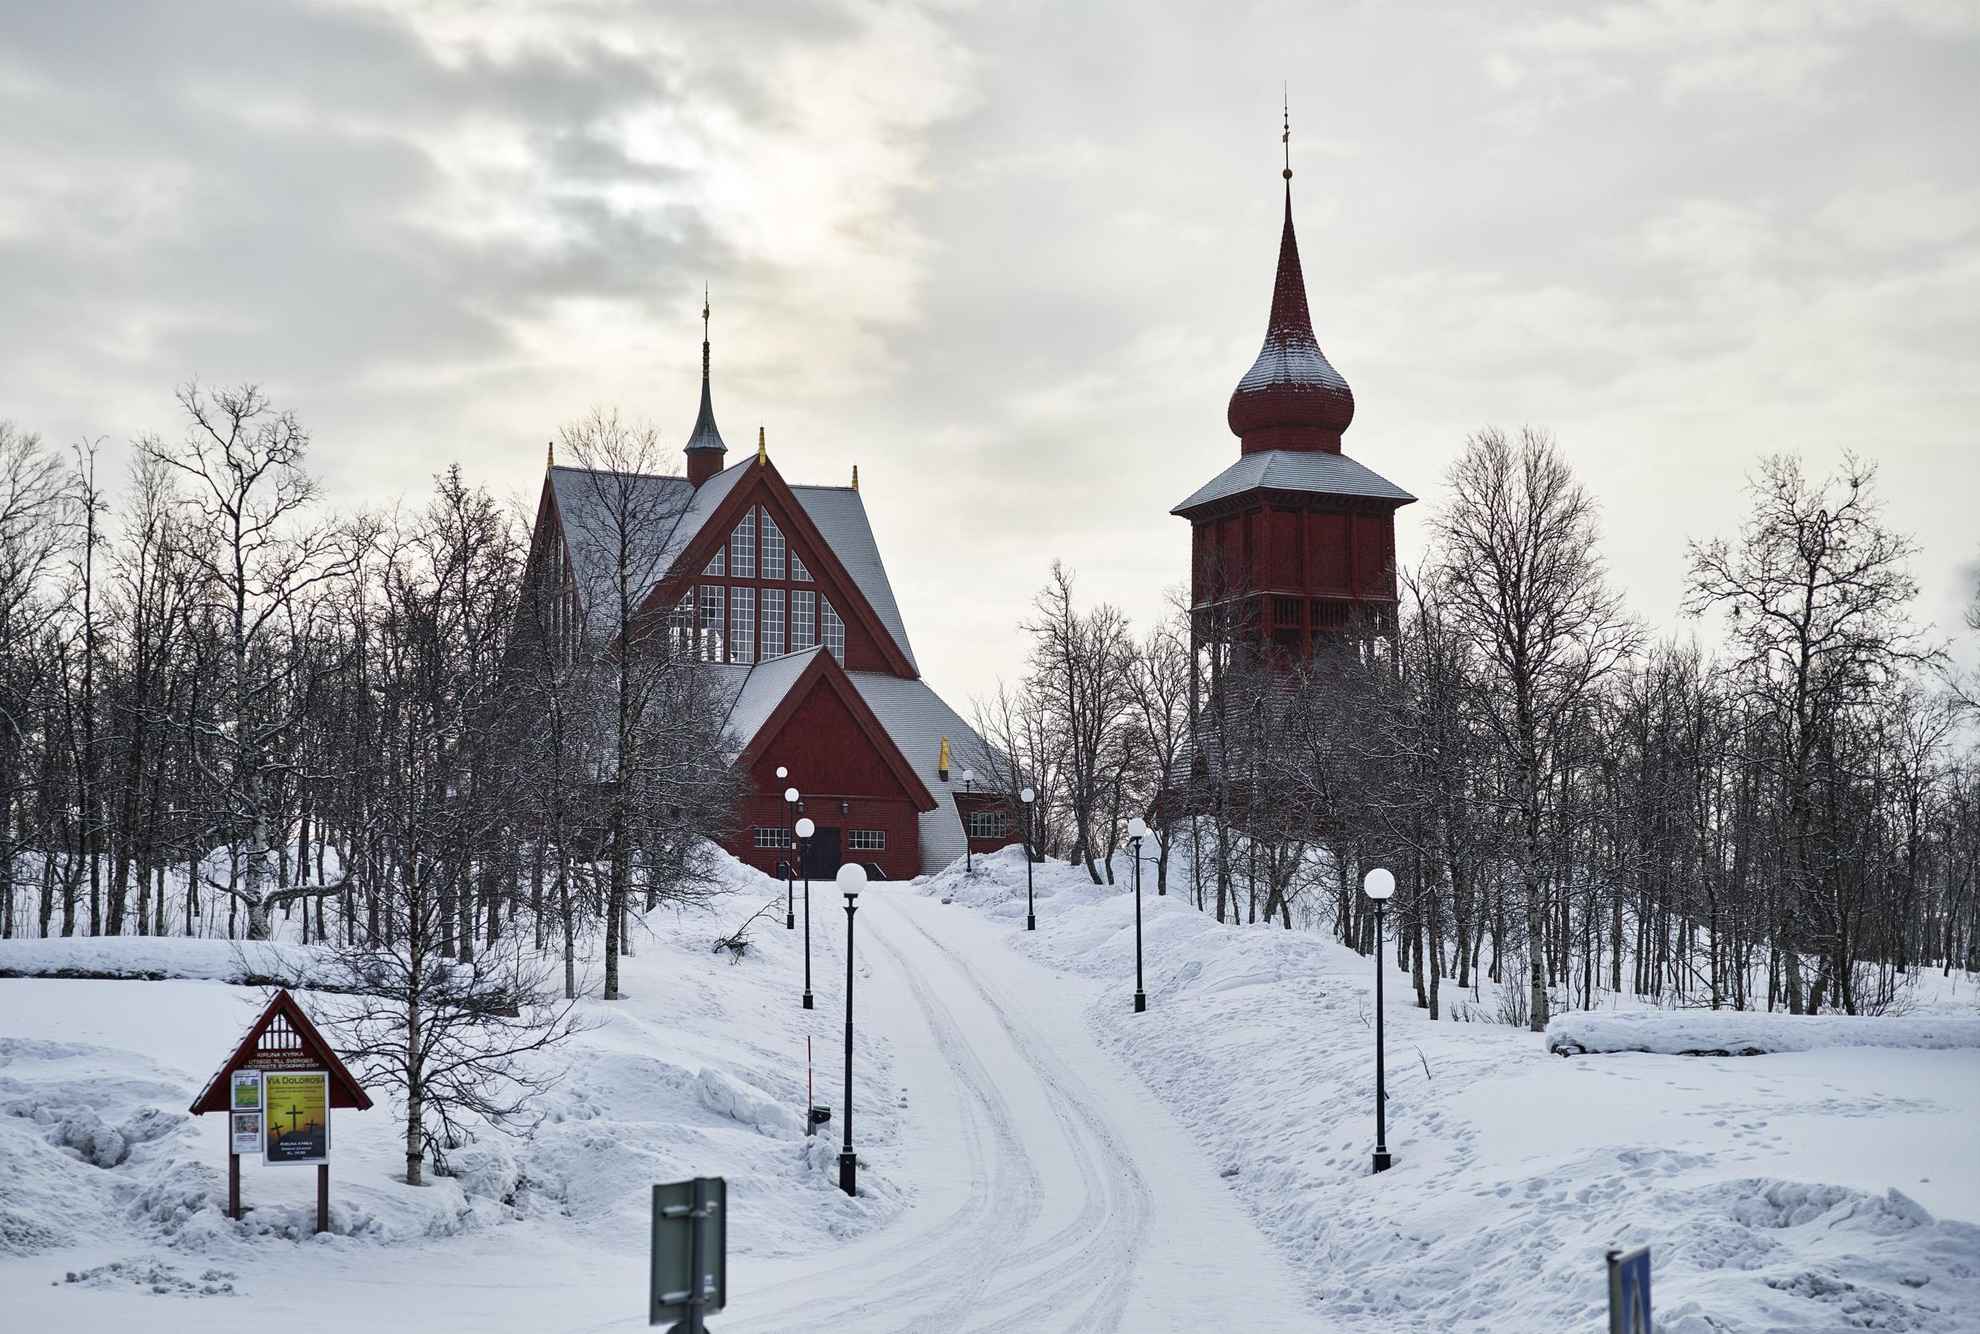 De Kiruna-kerk, een houten gebouw met een aparte klokkentoren, ligt op een met sneeuw bedekte helling.